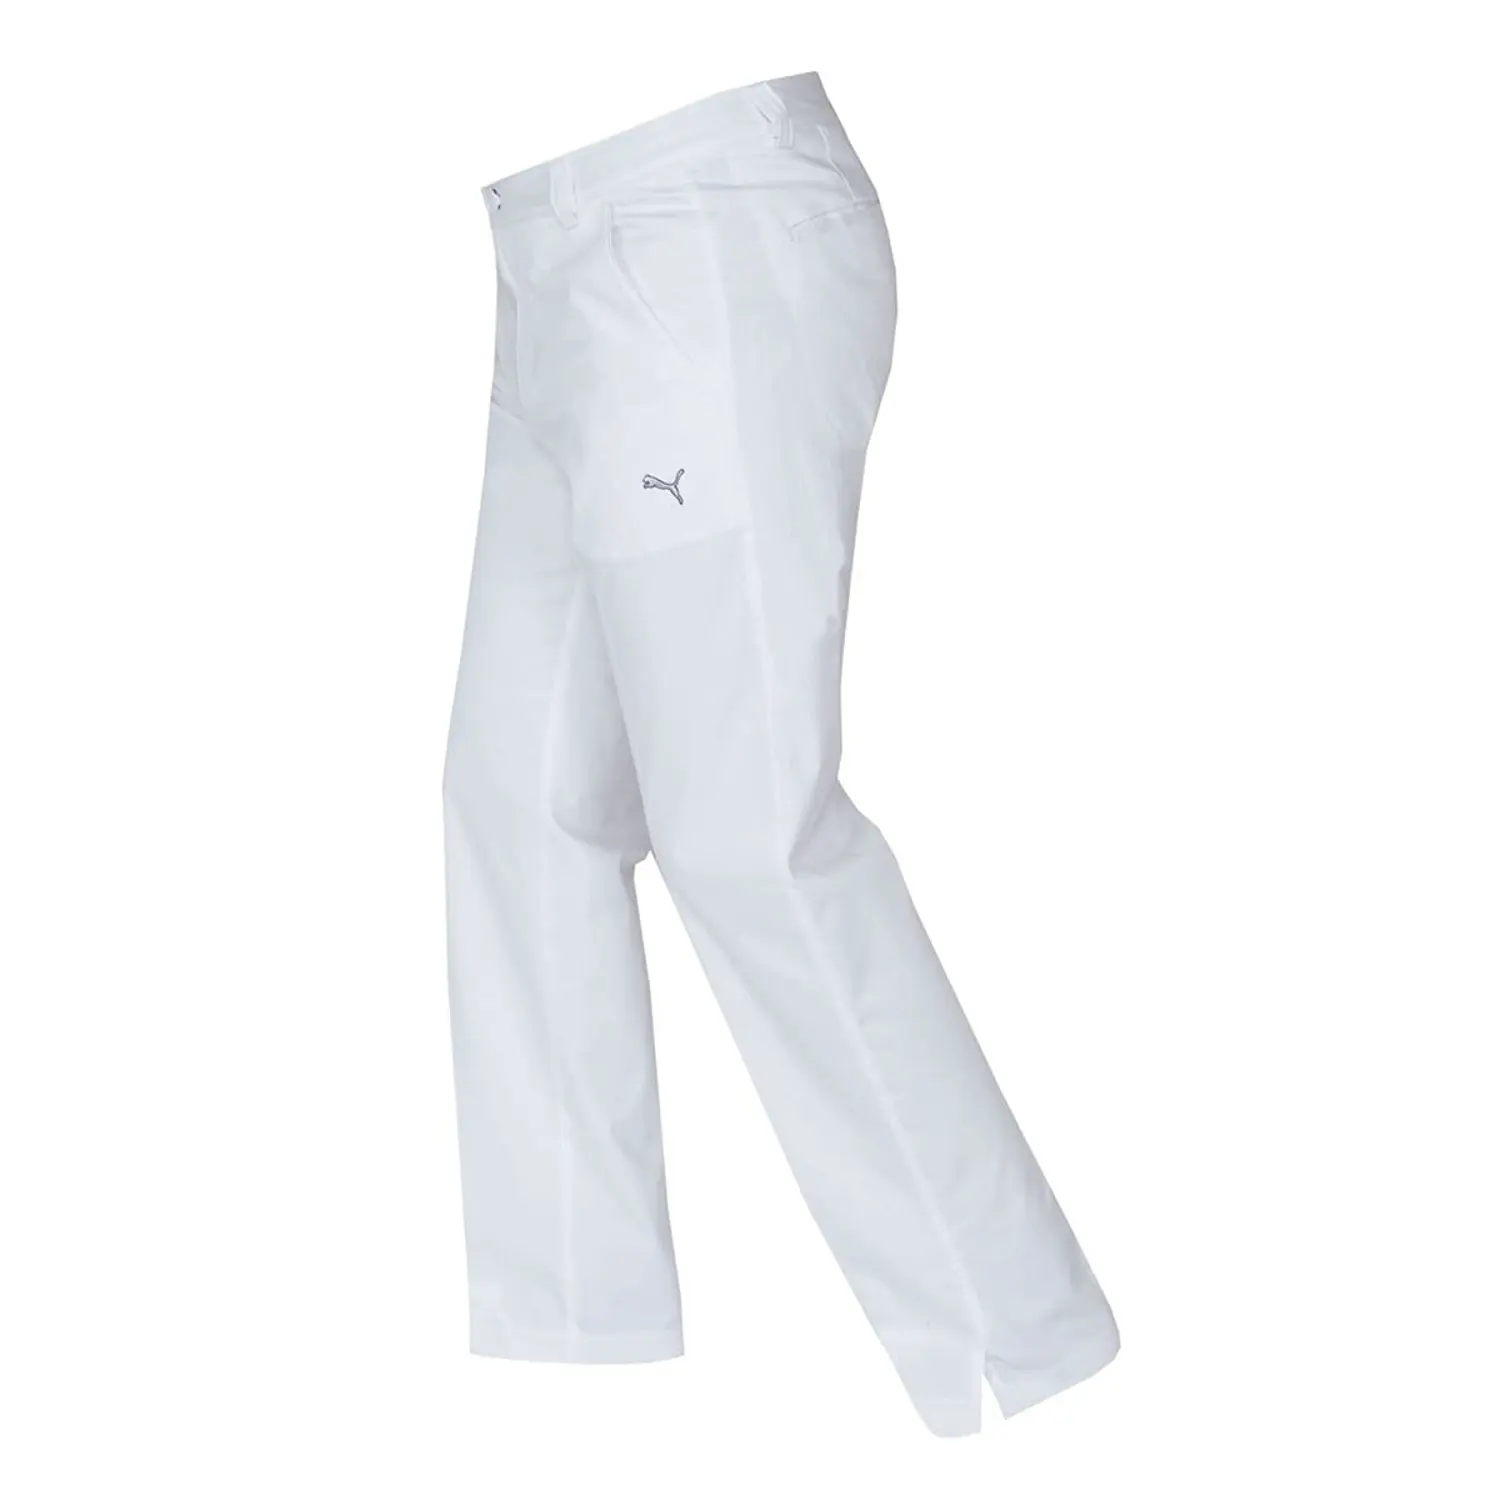 puma white golf pants - 56% OFF - awi.com